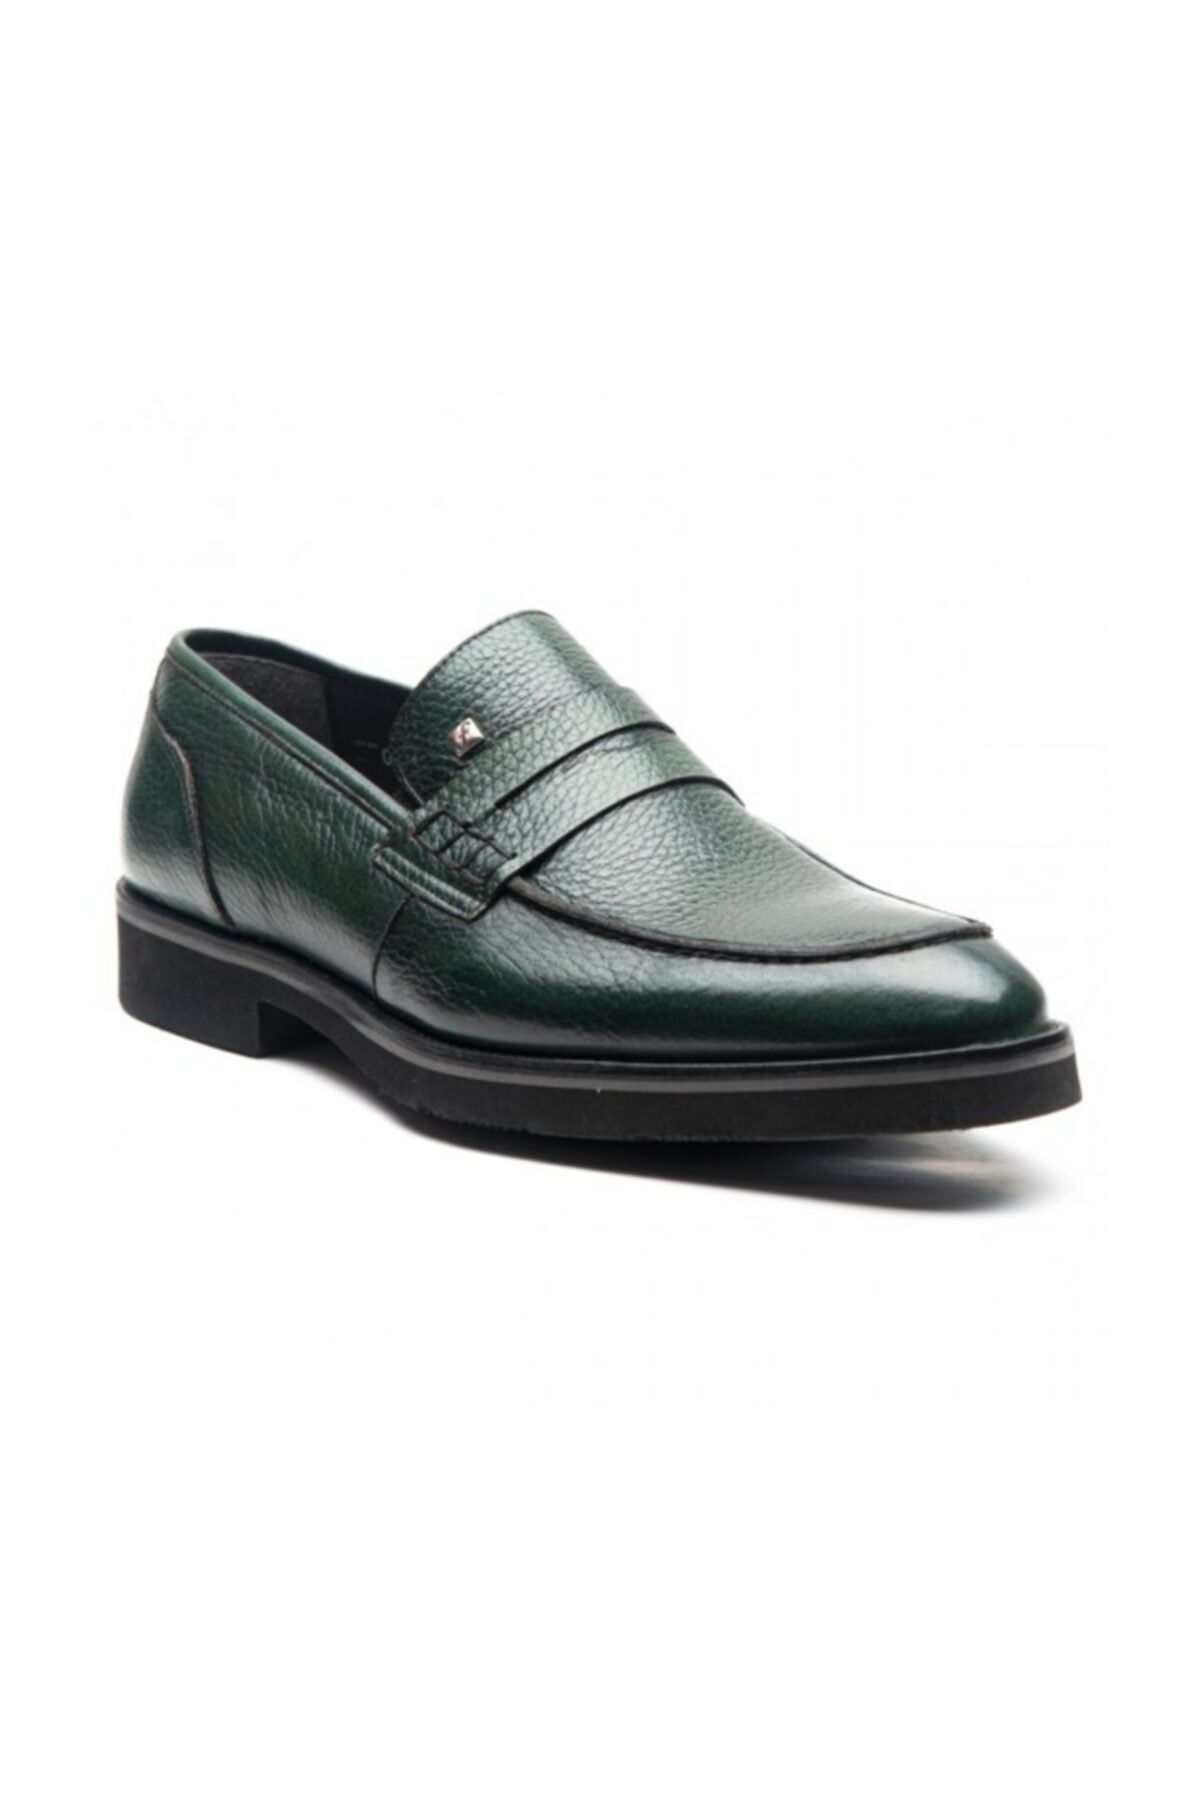 Fosco Erkek Yeşil Hakiki Deri Ayakkabı 1114